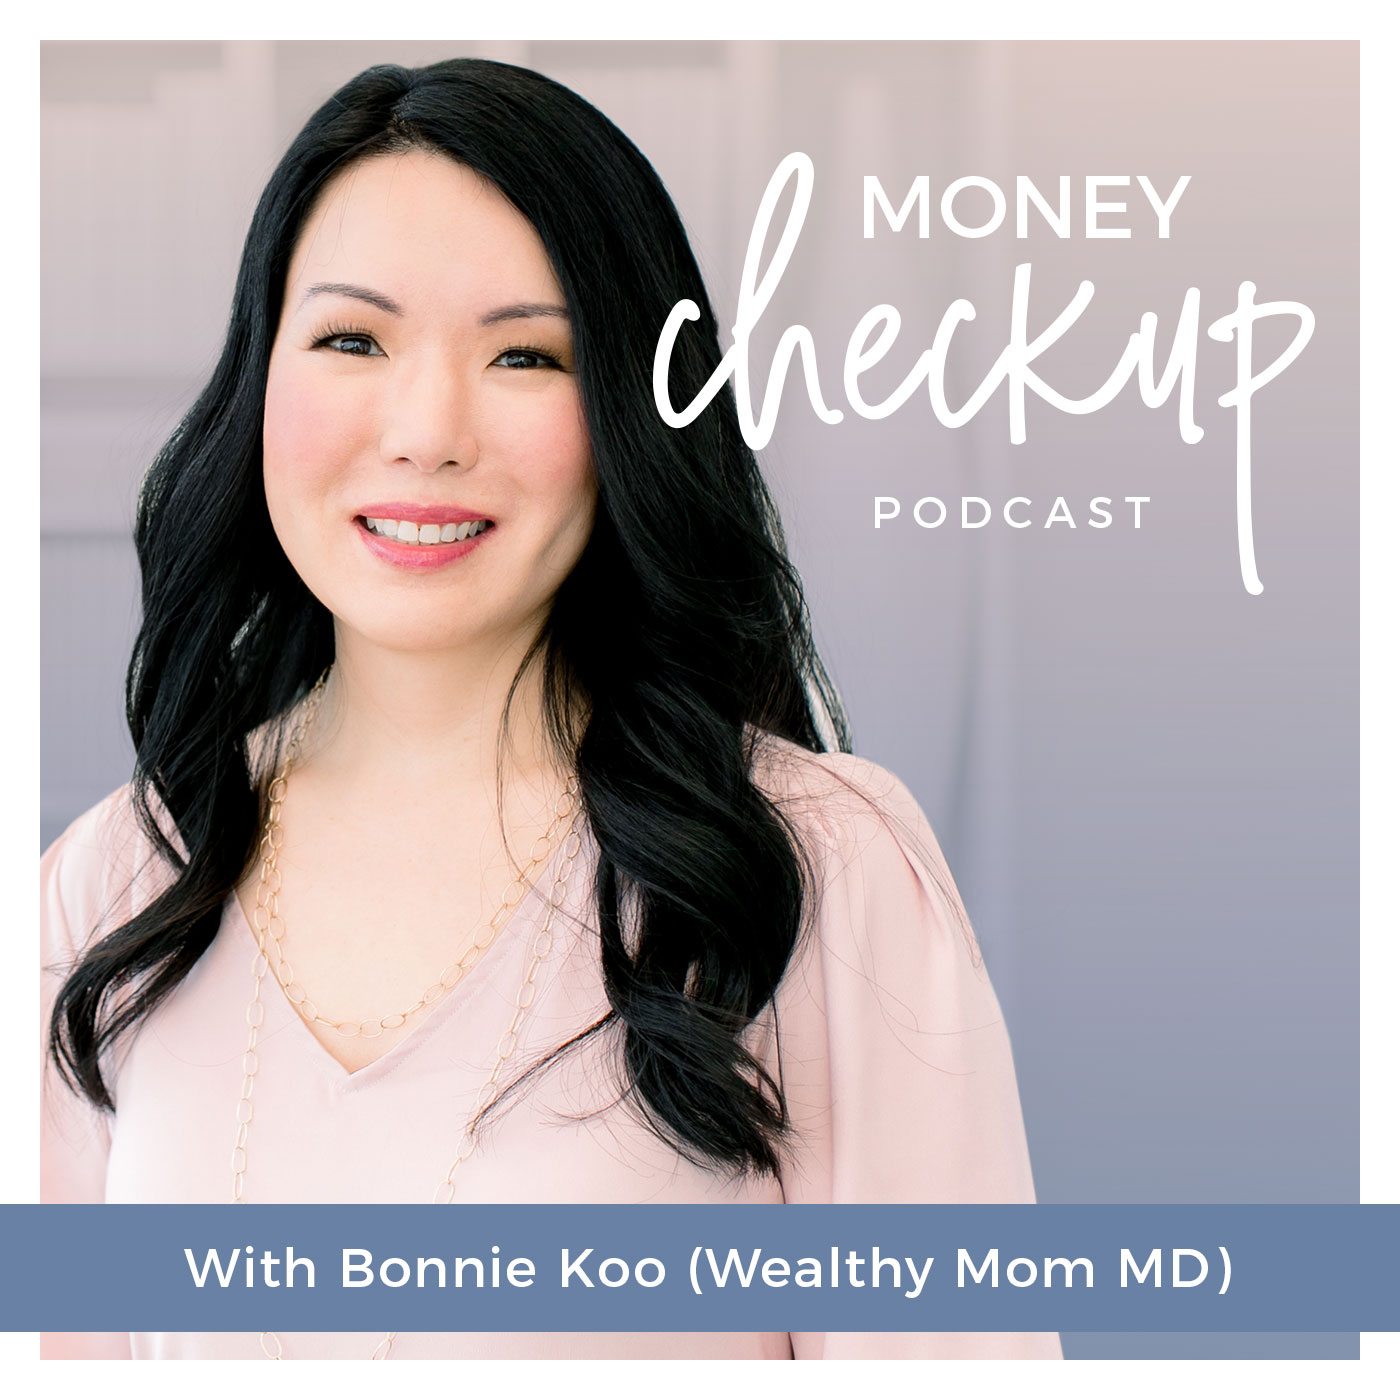 Bonnie Koo, Wealthy Mom MD